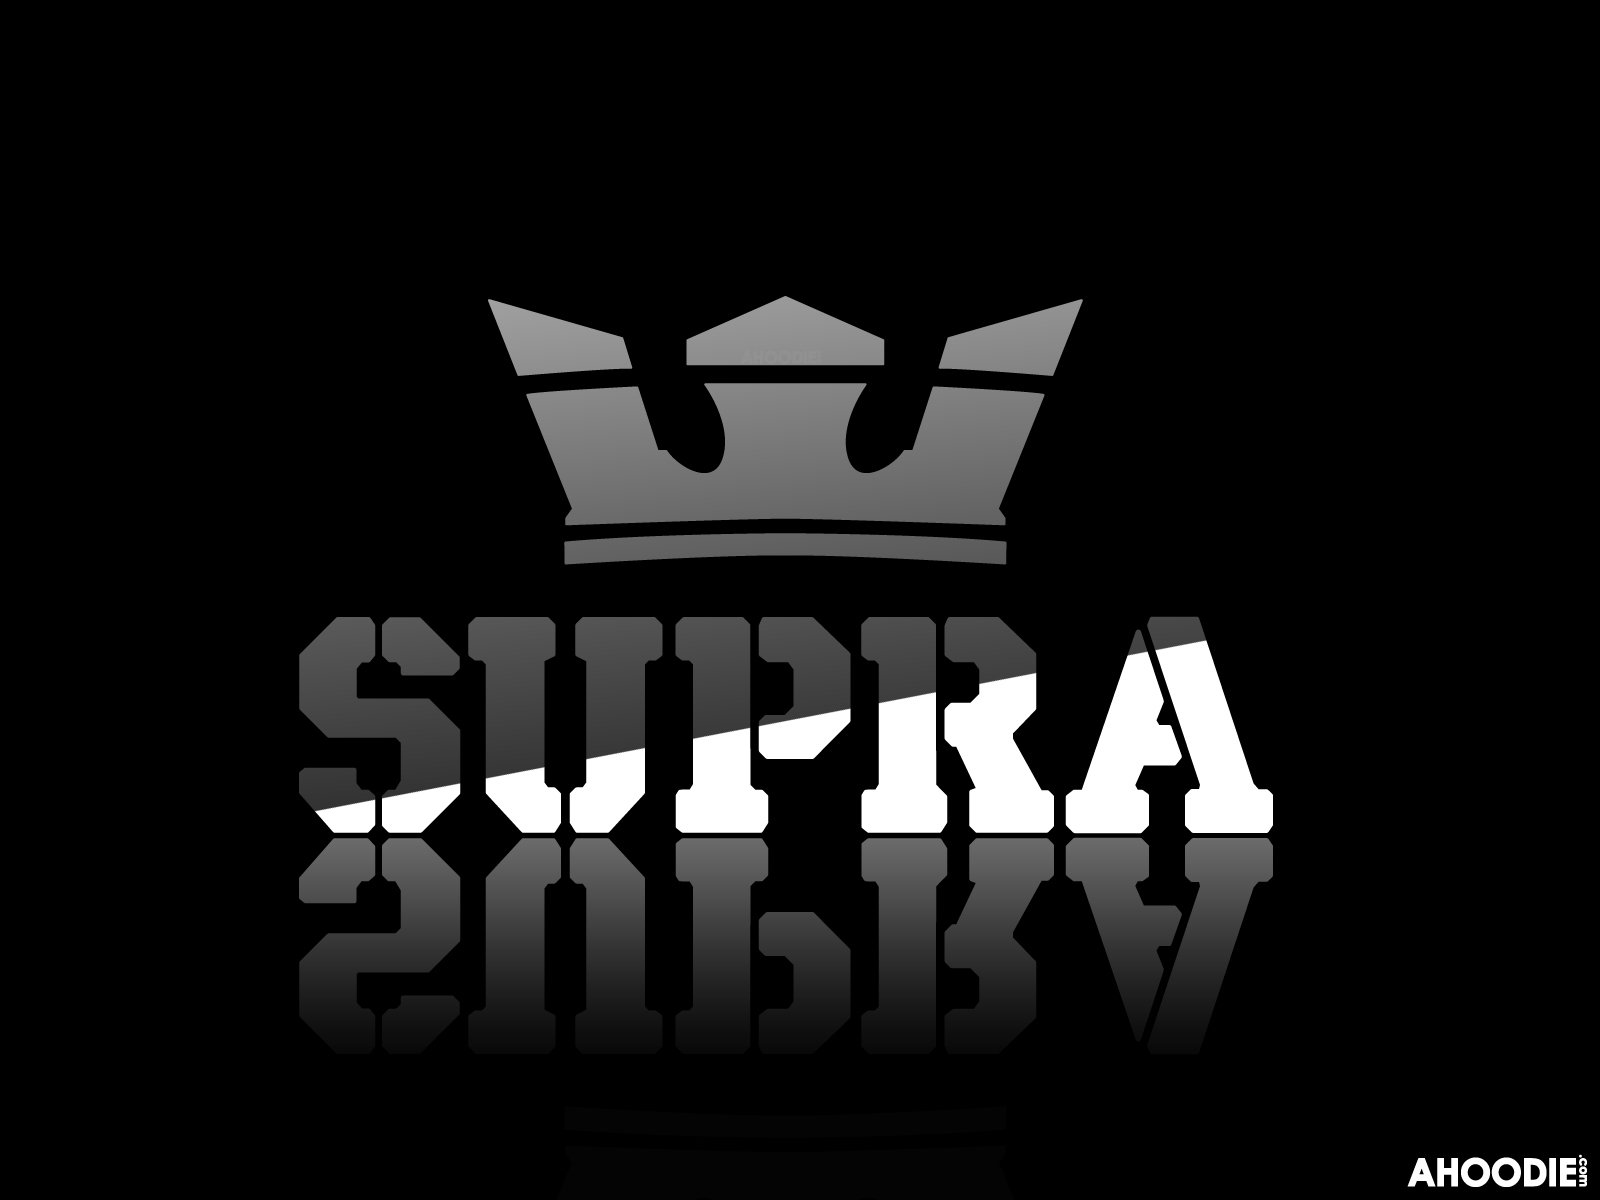 Supra Footwear M Xico Patrocinador Oficial De Blast O Media